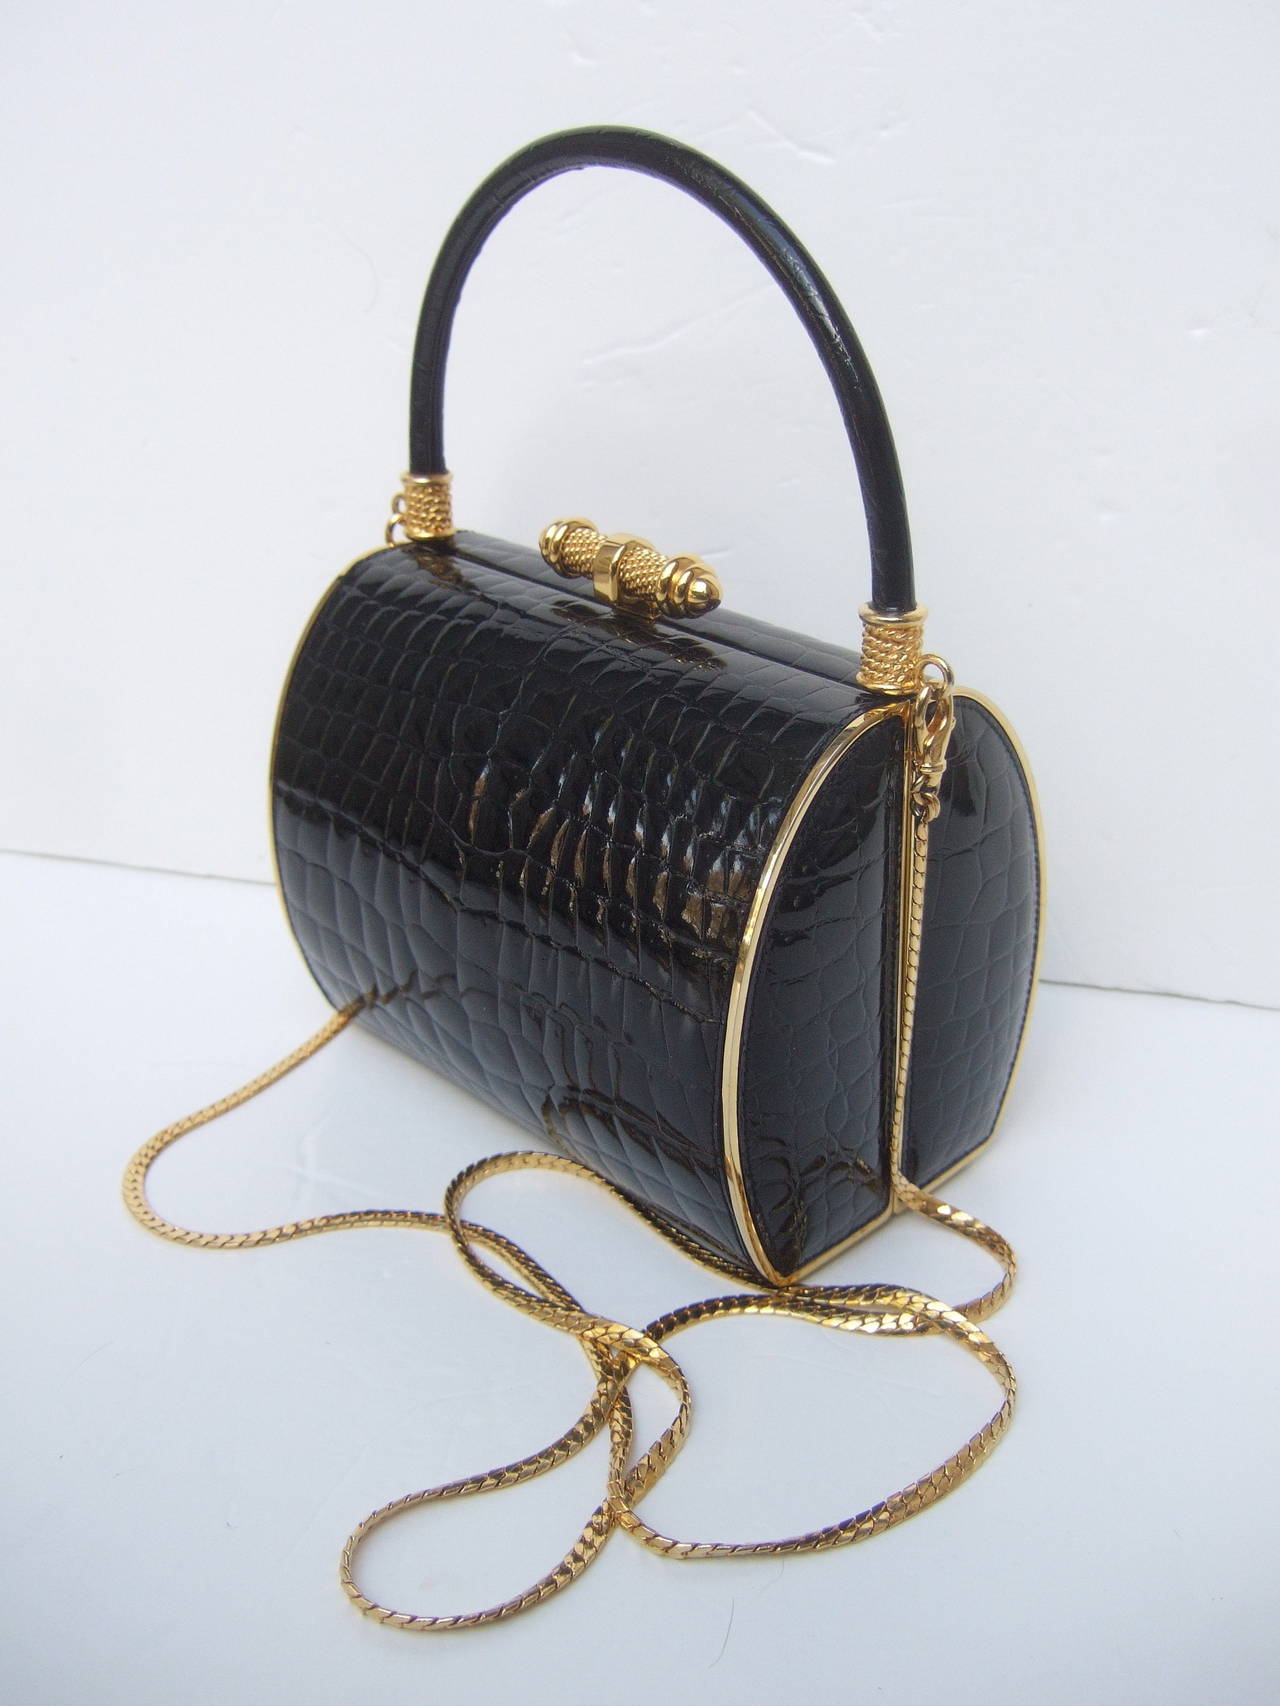 Elegant Black Embossed Leather Handbag Designed by Finesse La Model 3